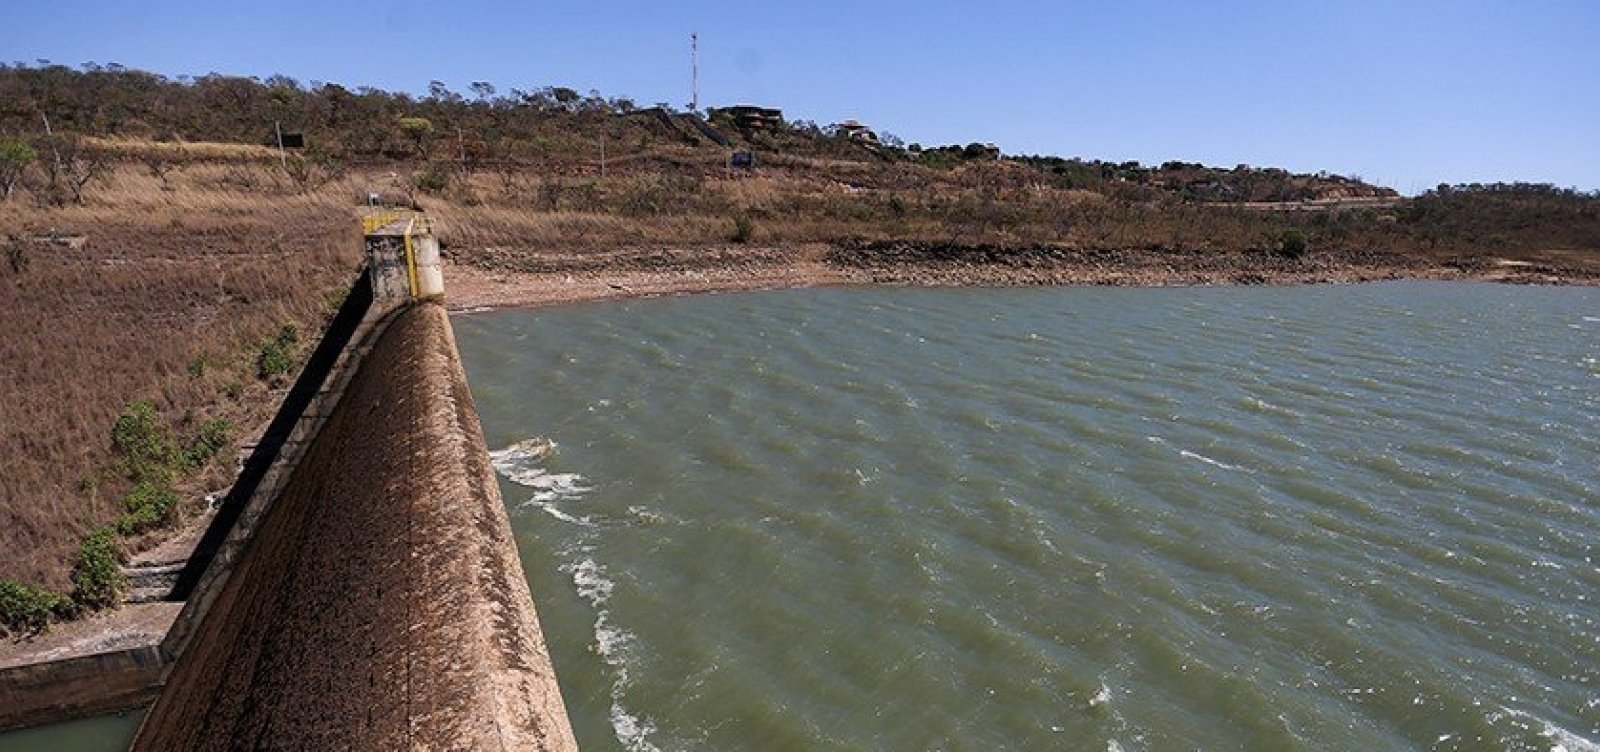 Governo deve investir R$ 25 bi para ampliar segurança hídrica